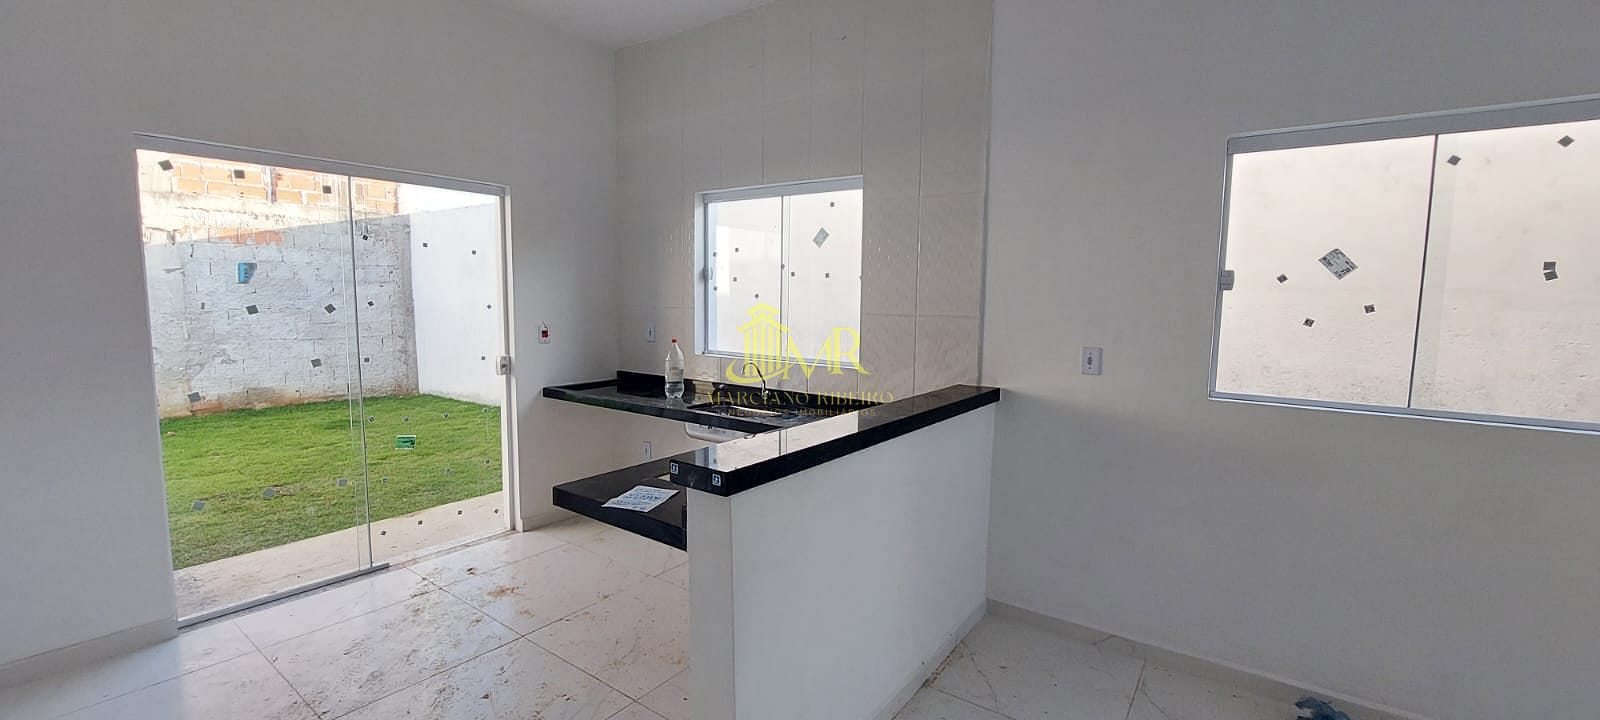 Casa em Jardim do Vale II, Guaratinguetá/SP de 50m² 2 quartos à venda por R$ 219.000,00